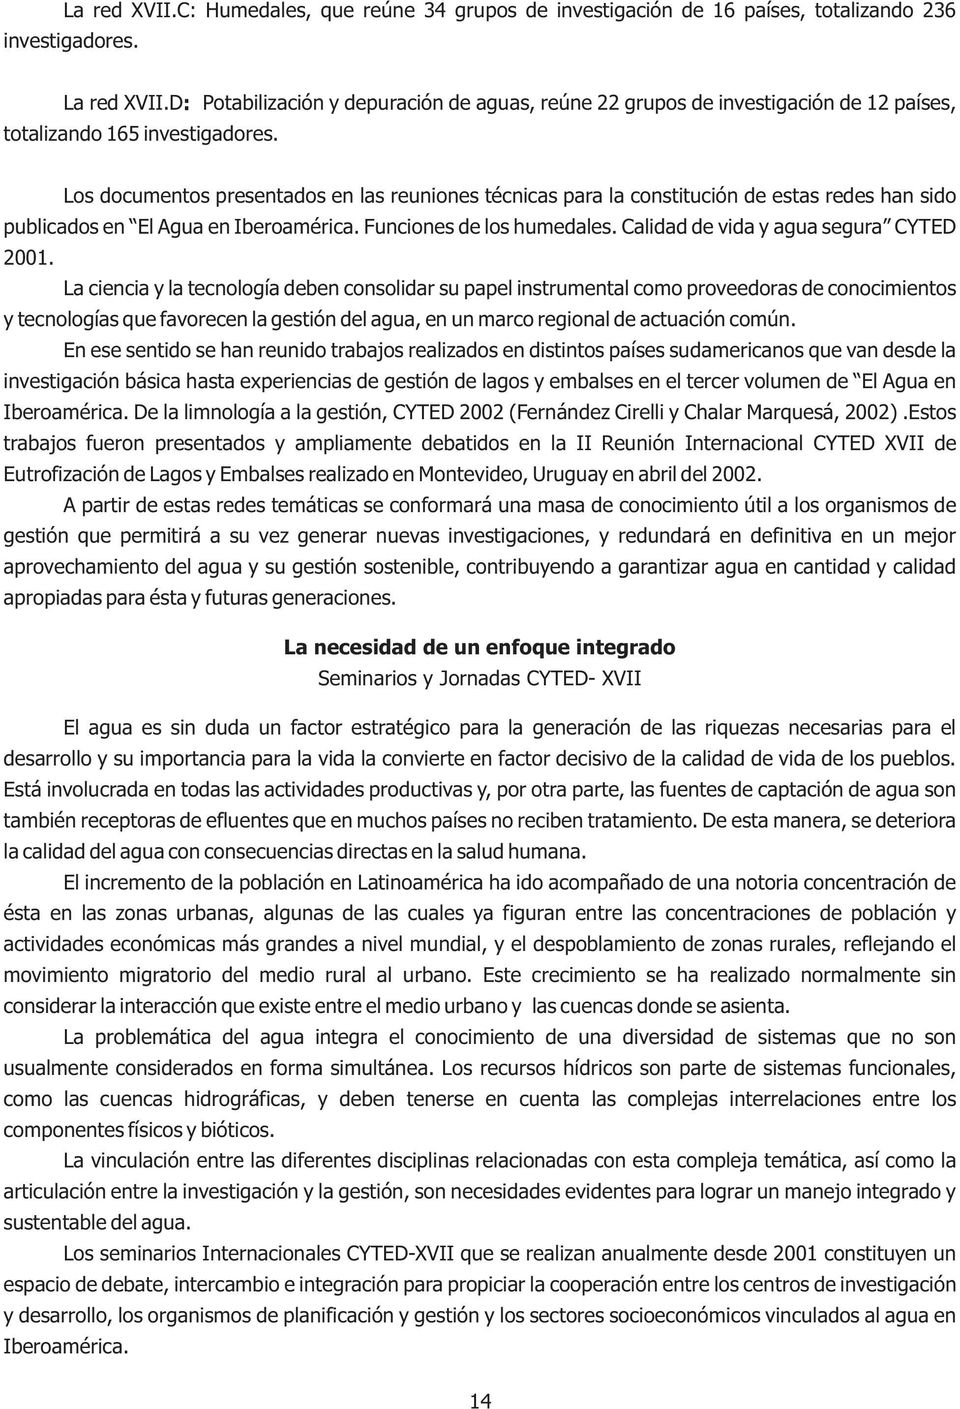 Los documentos presentados en las reuniones técnicas para la constitución de estas redes han sido publicados en El Agua en Iberoamérica. Funciones de los humedales.